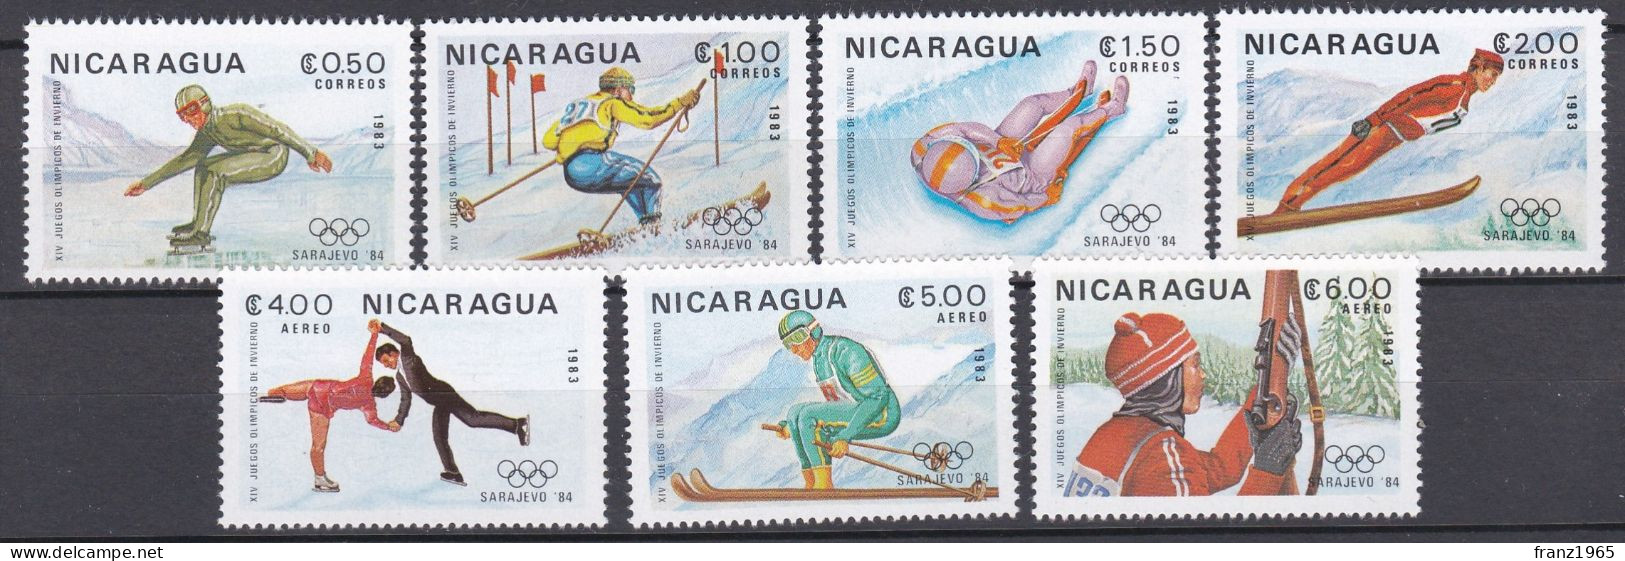 Nicaragua - Olympics Games 1984 - Winter 1984: Sarajevo